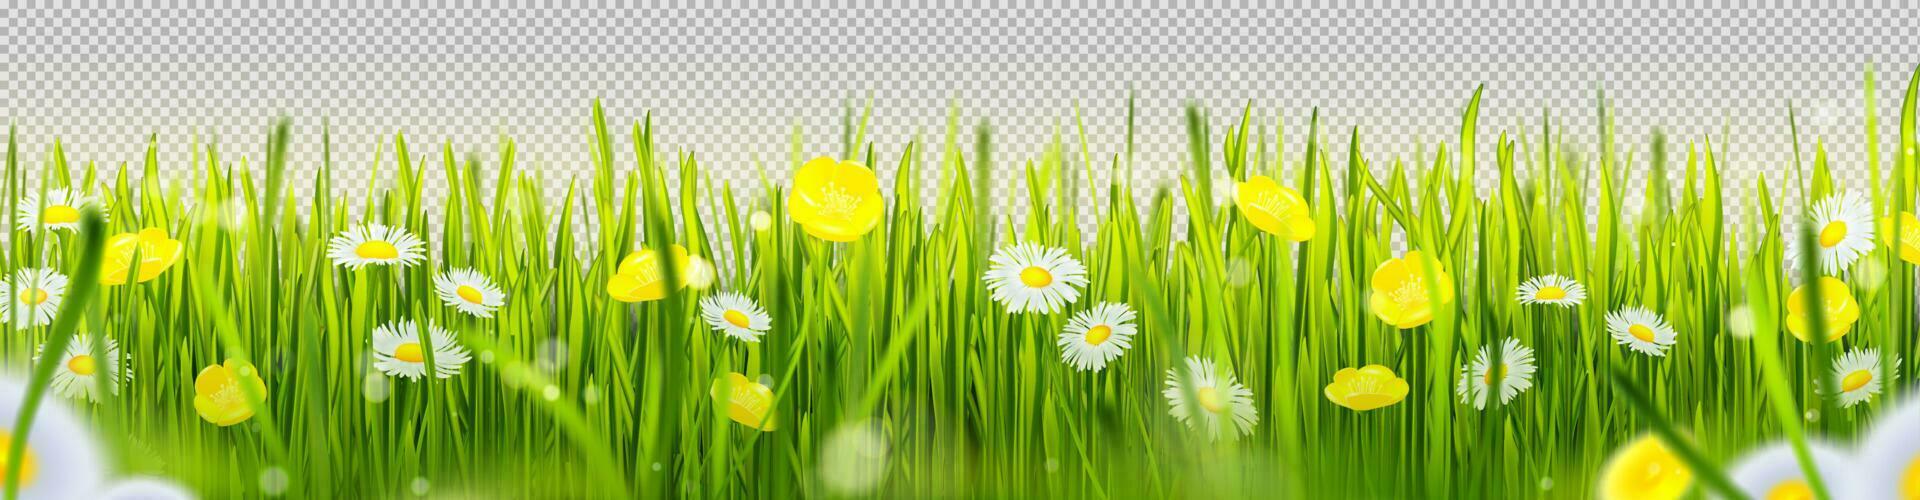 realistisk grön gräs gräns med blommor vektor